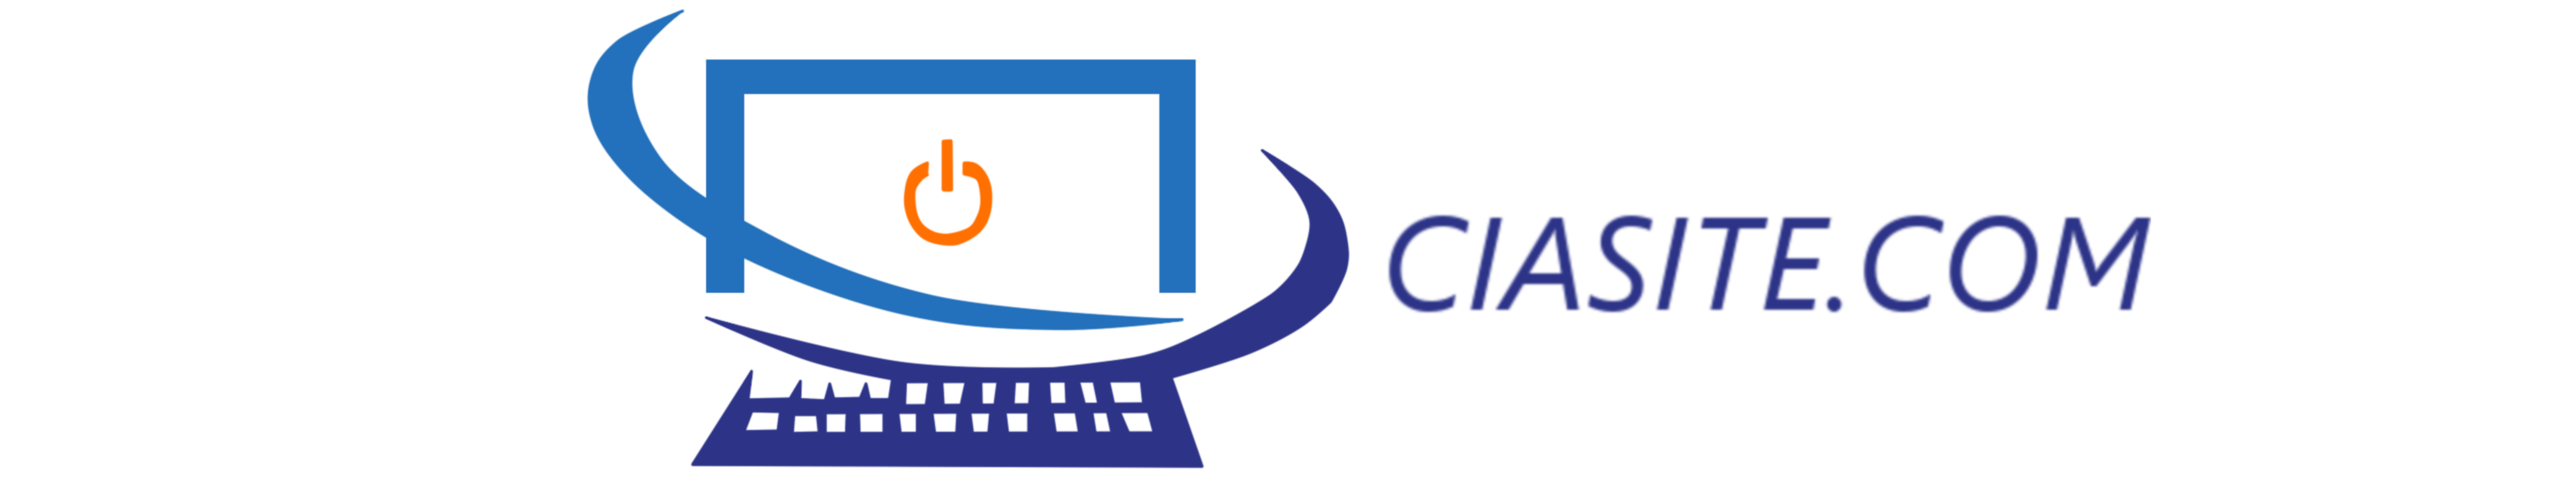 CiaSite.com - Seu Negócio Merece Um Site